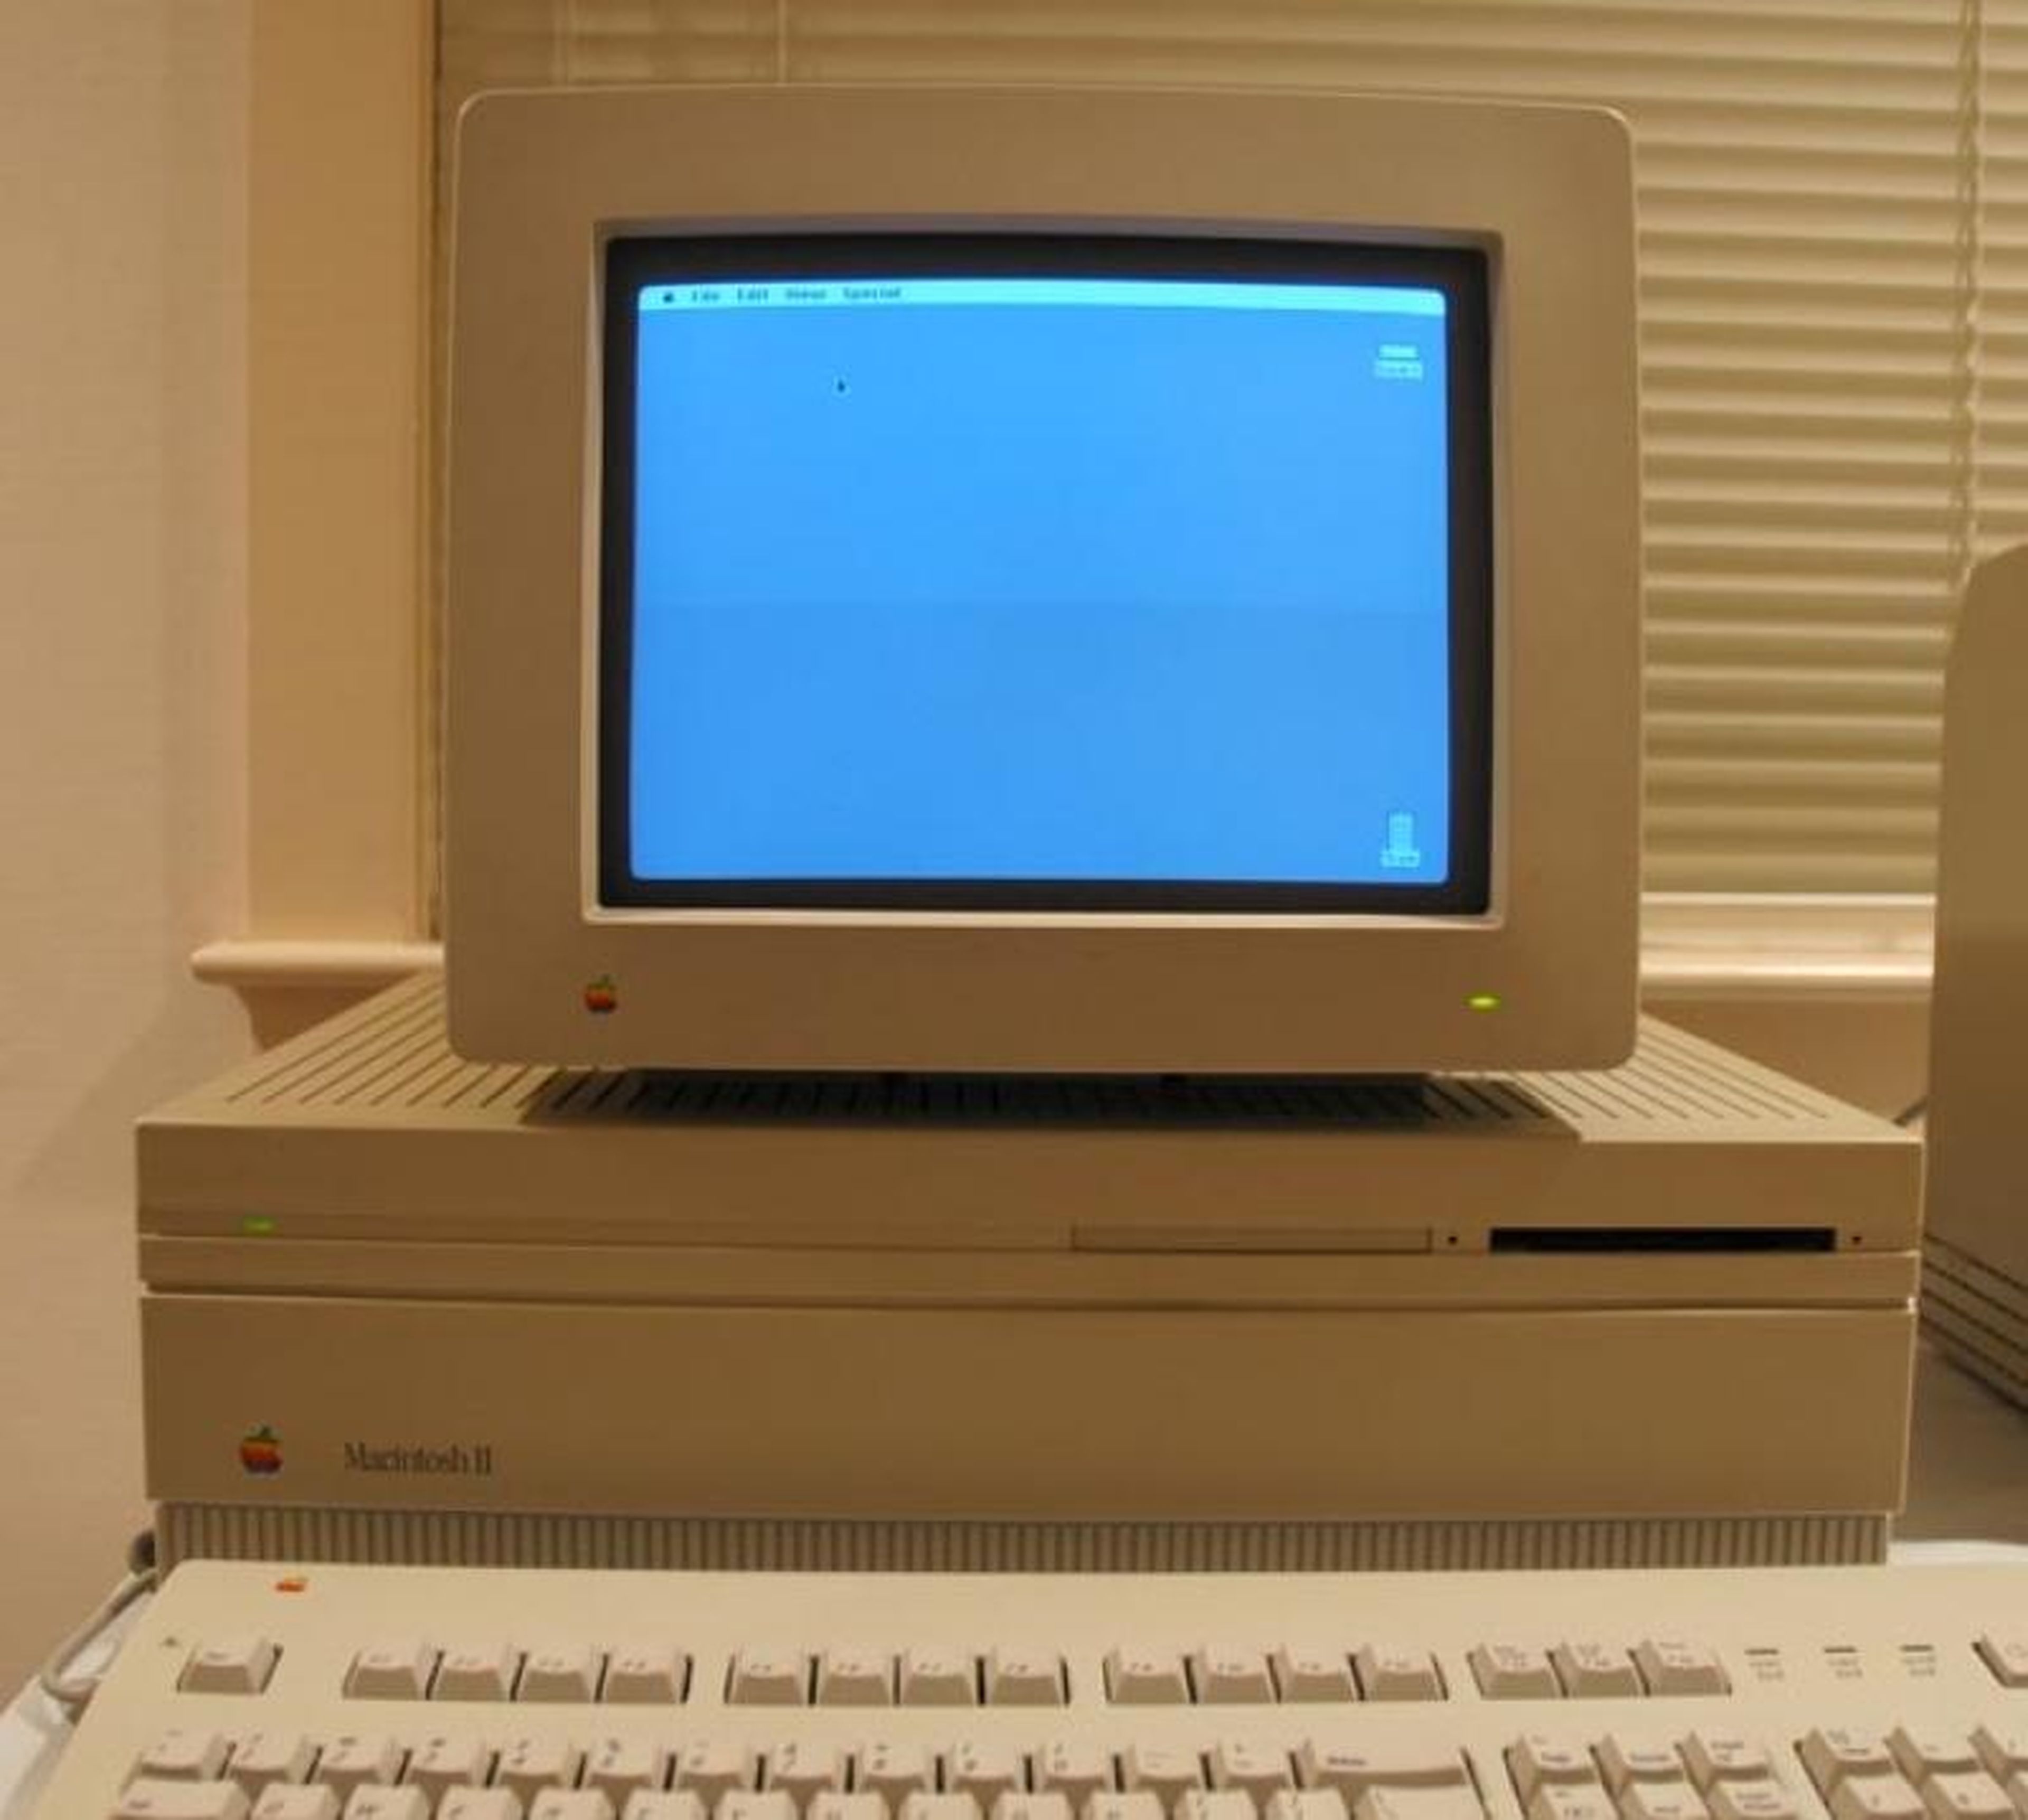 16. Macintosh II (1987) — $5,498